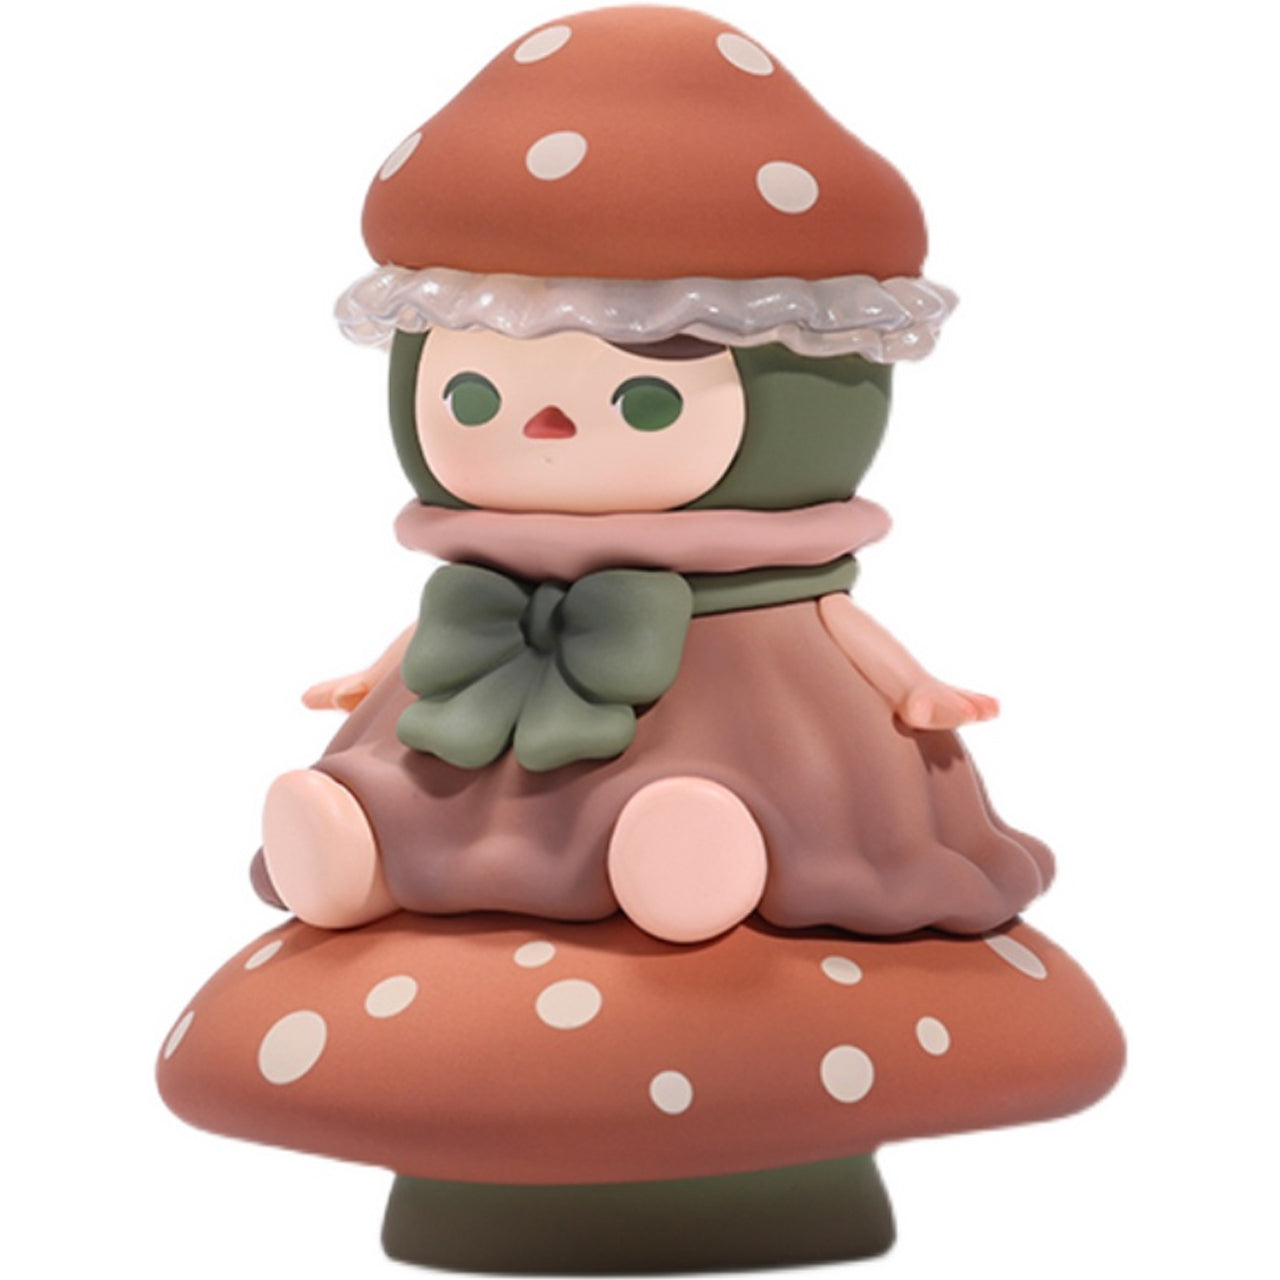 PUCKY Mushroom Fairy Limited Edition Figurine